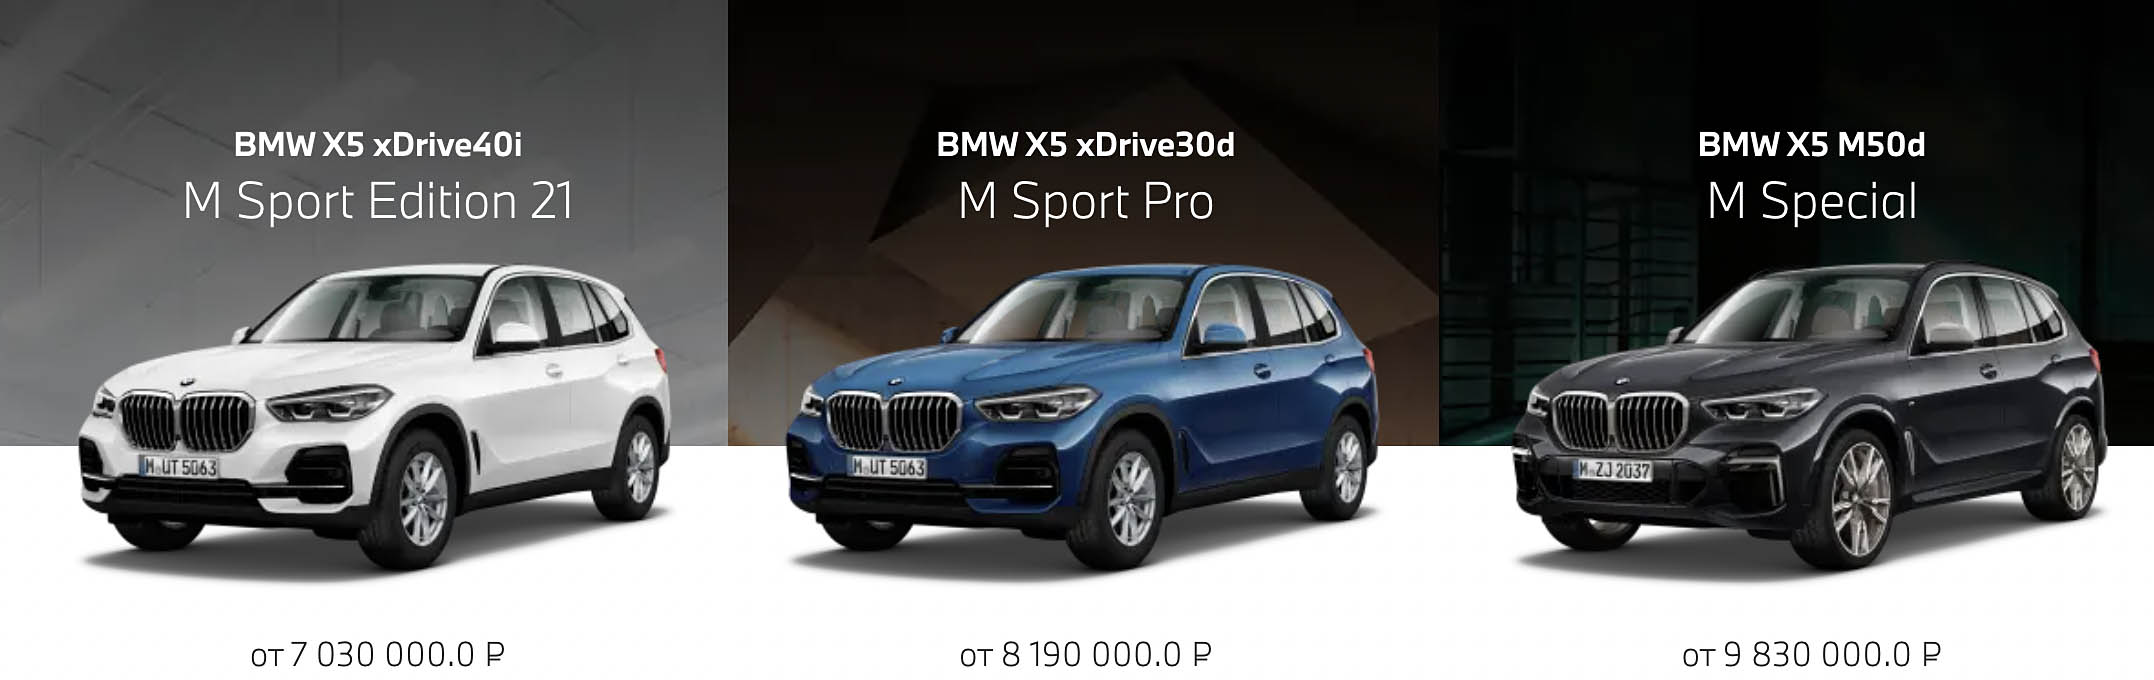 Стоимость BMW X5